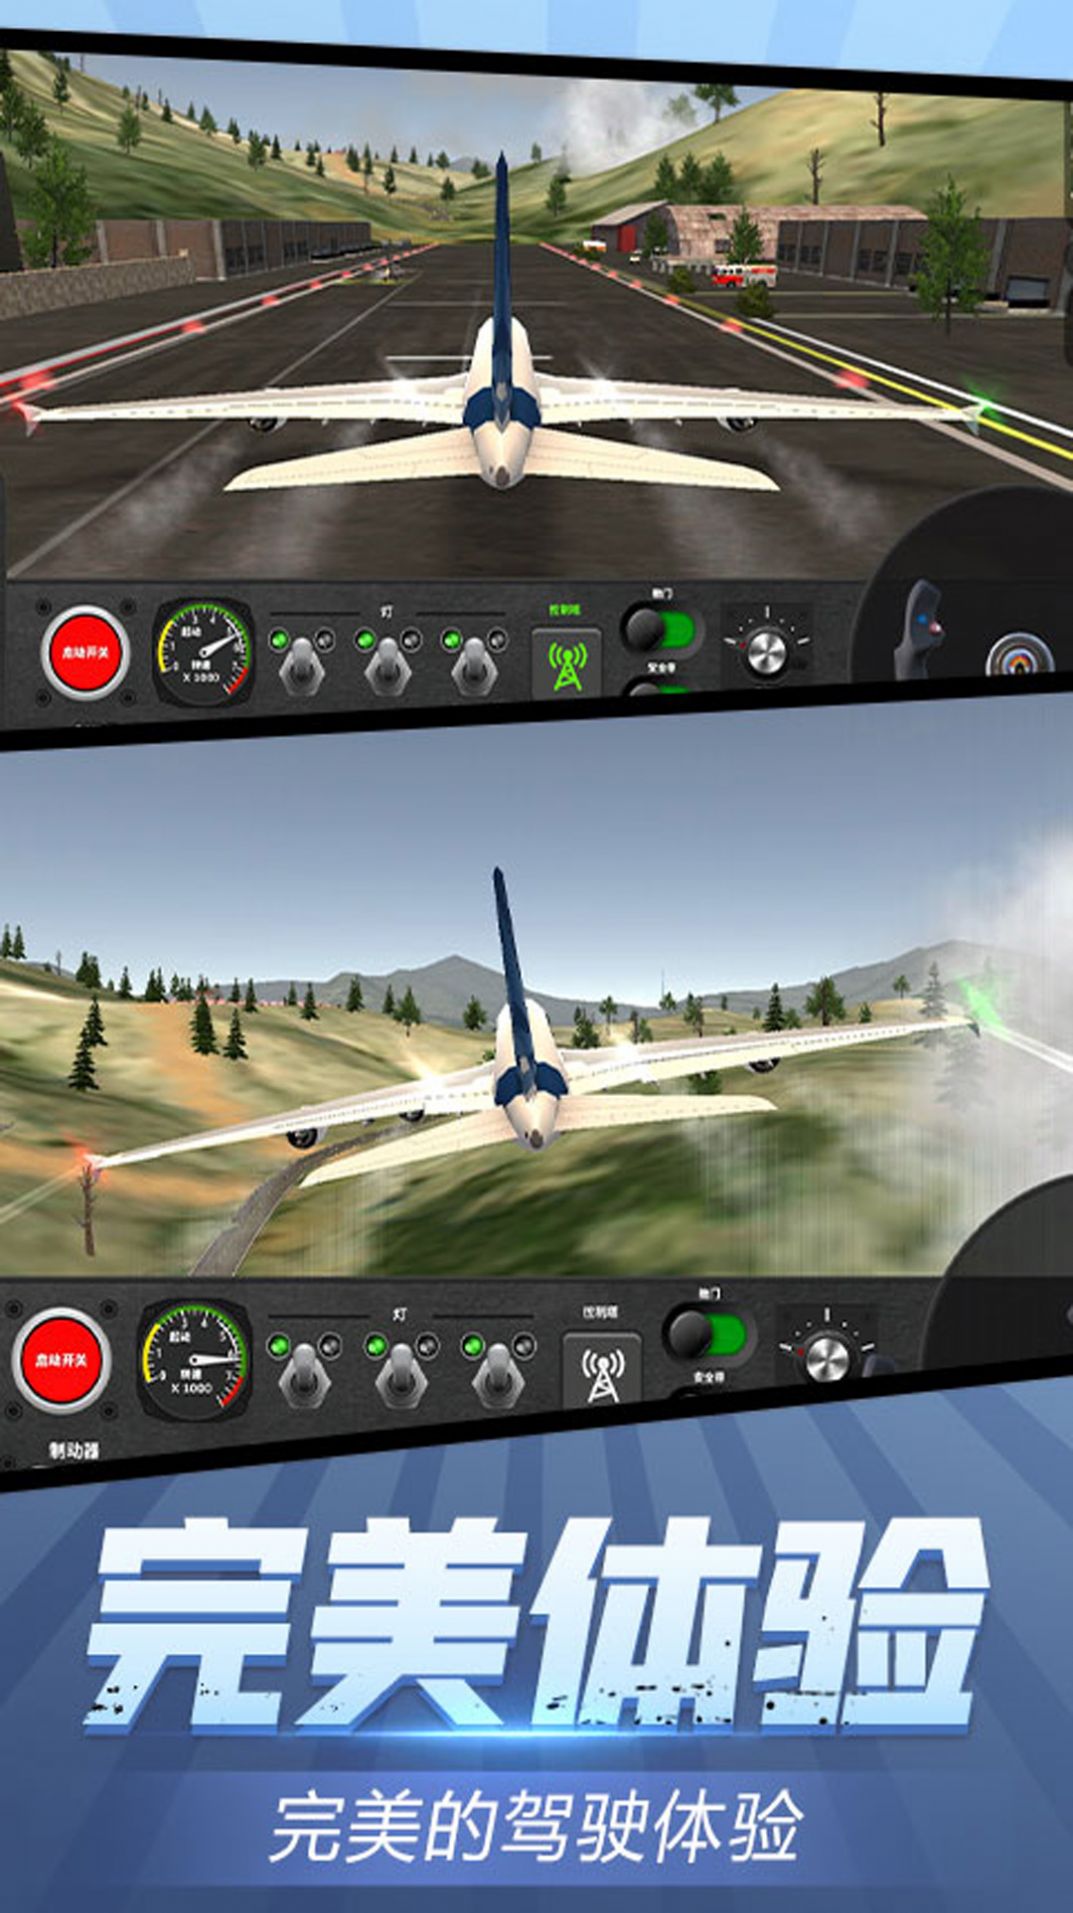 安全飞行模拟器游戏图1